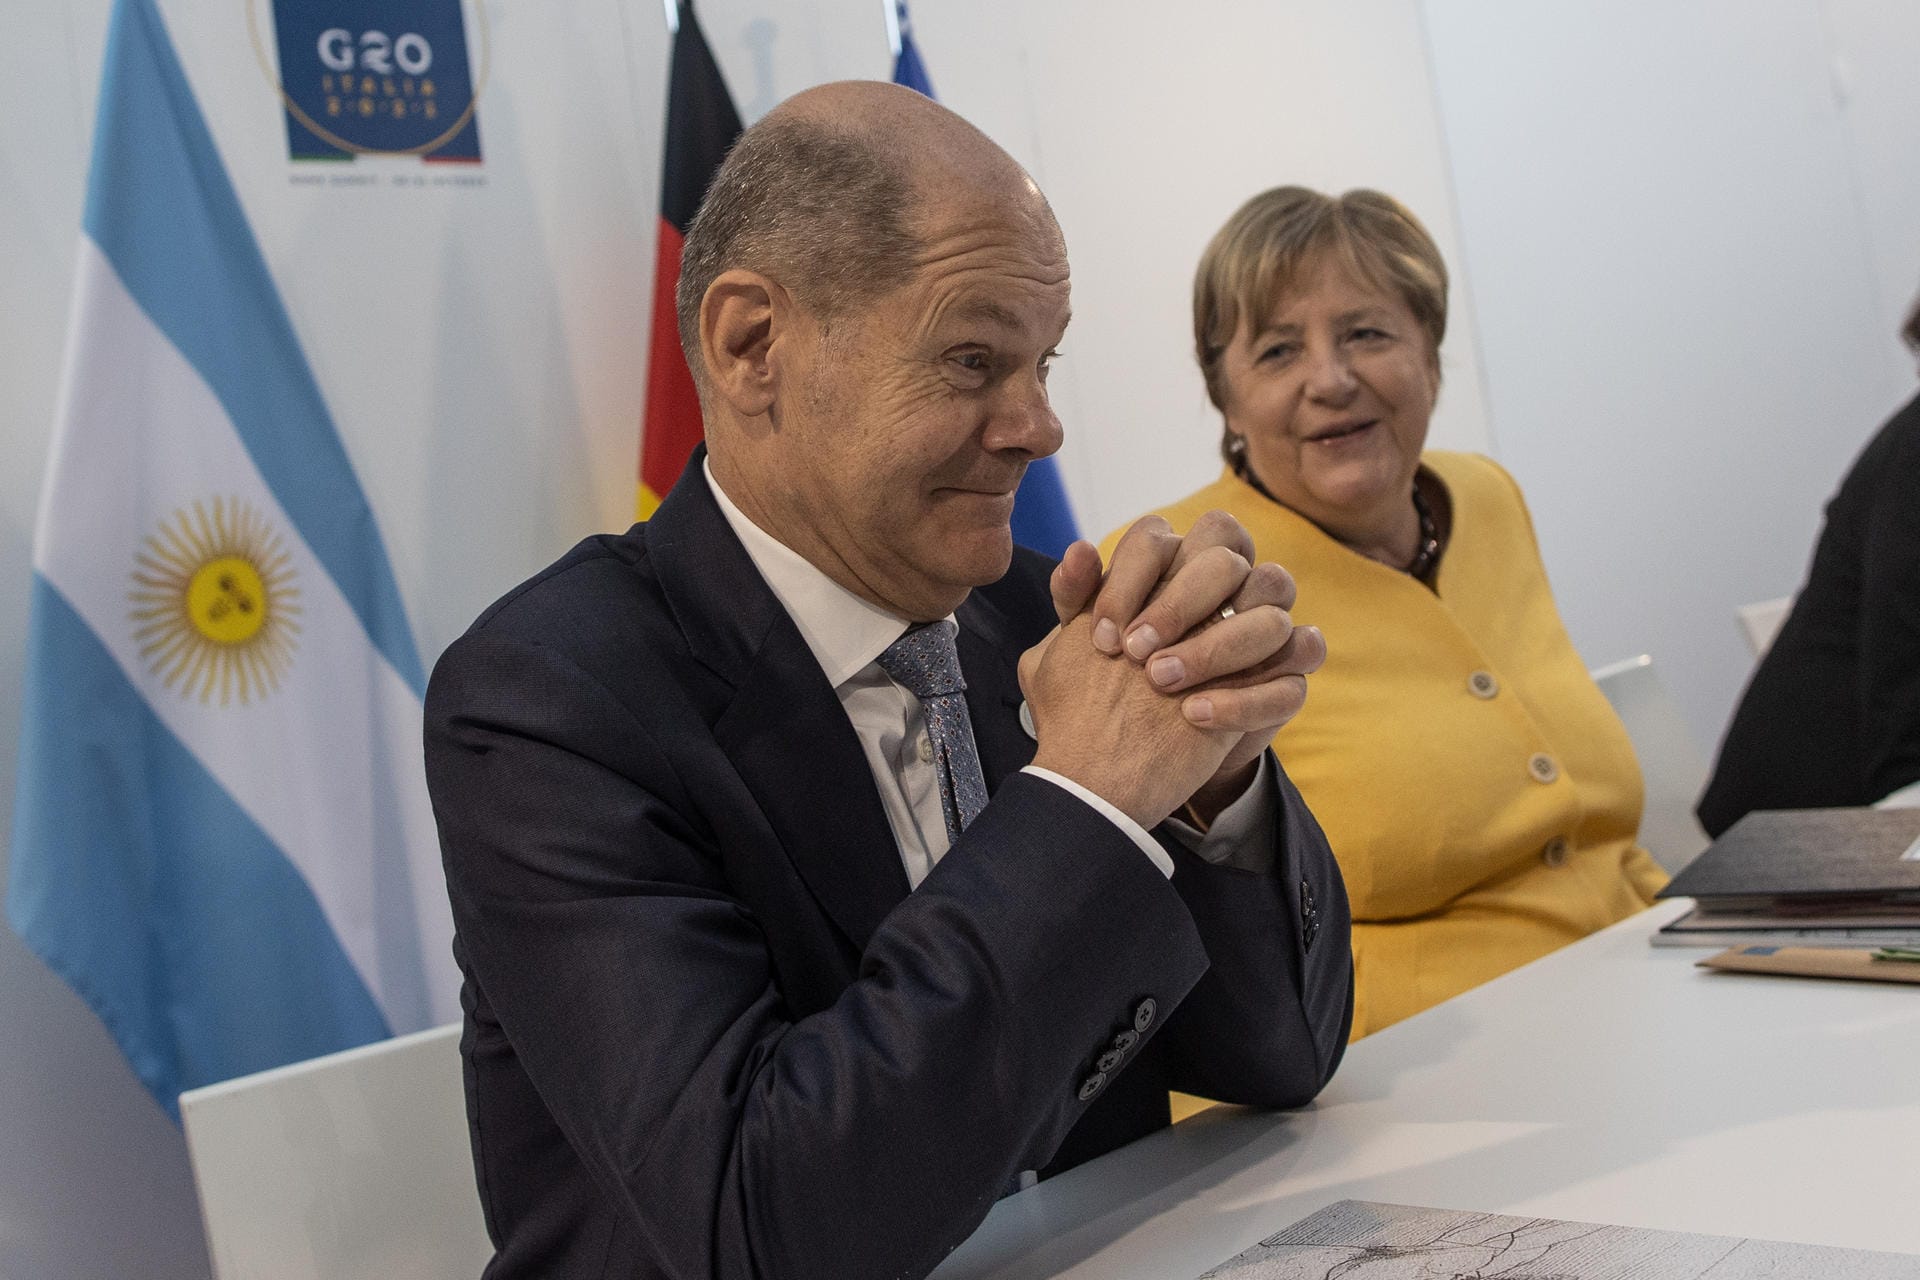 Gemeinsame Teilnahme: Olaf Scholz besuchte den G20-Gipfel nicht nur als Finanzminister, sondern vor allem auch als möglicher Nachfolger der scheidenden Kanzlerin Angela Merkel.